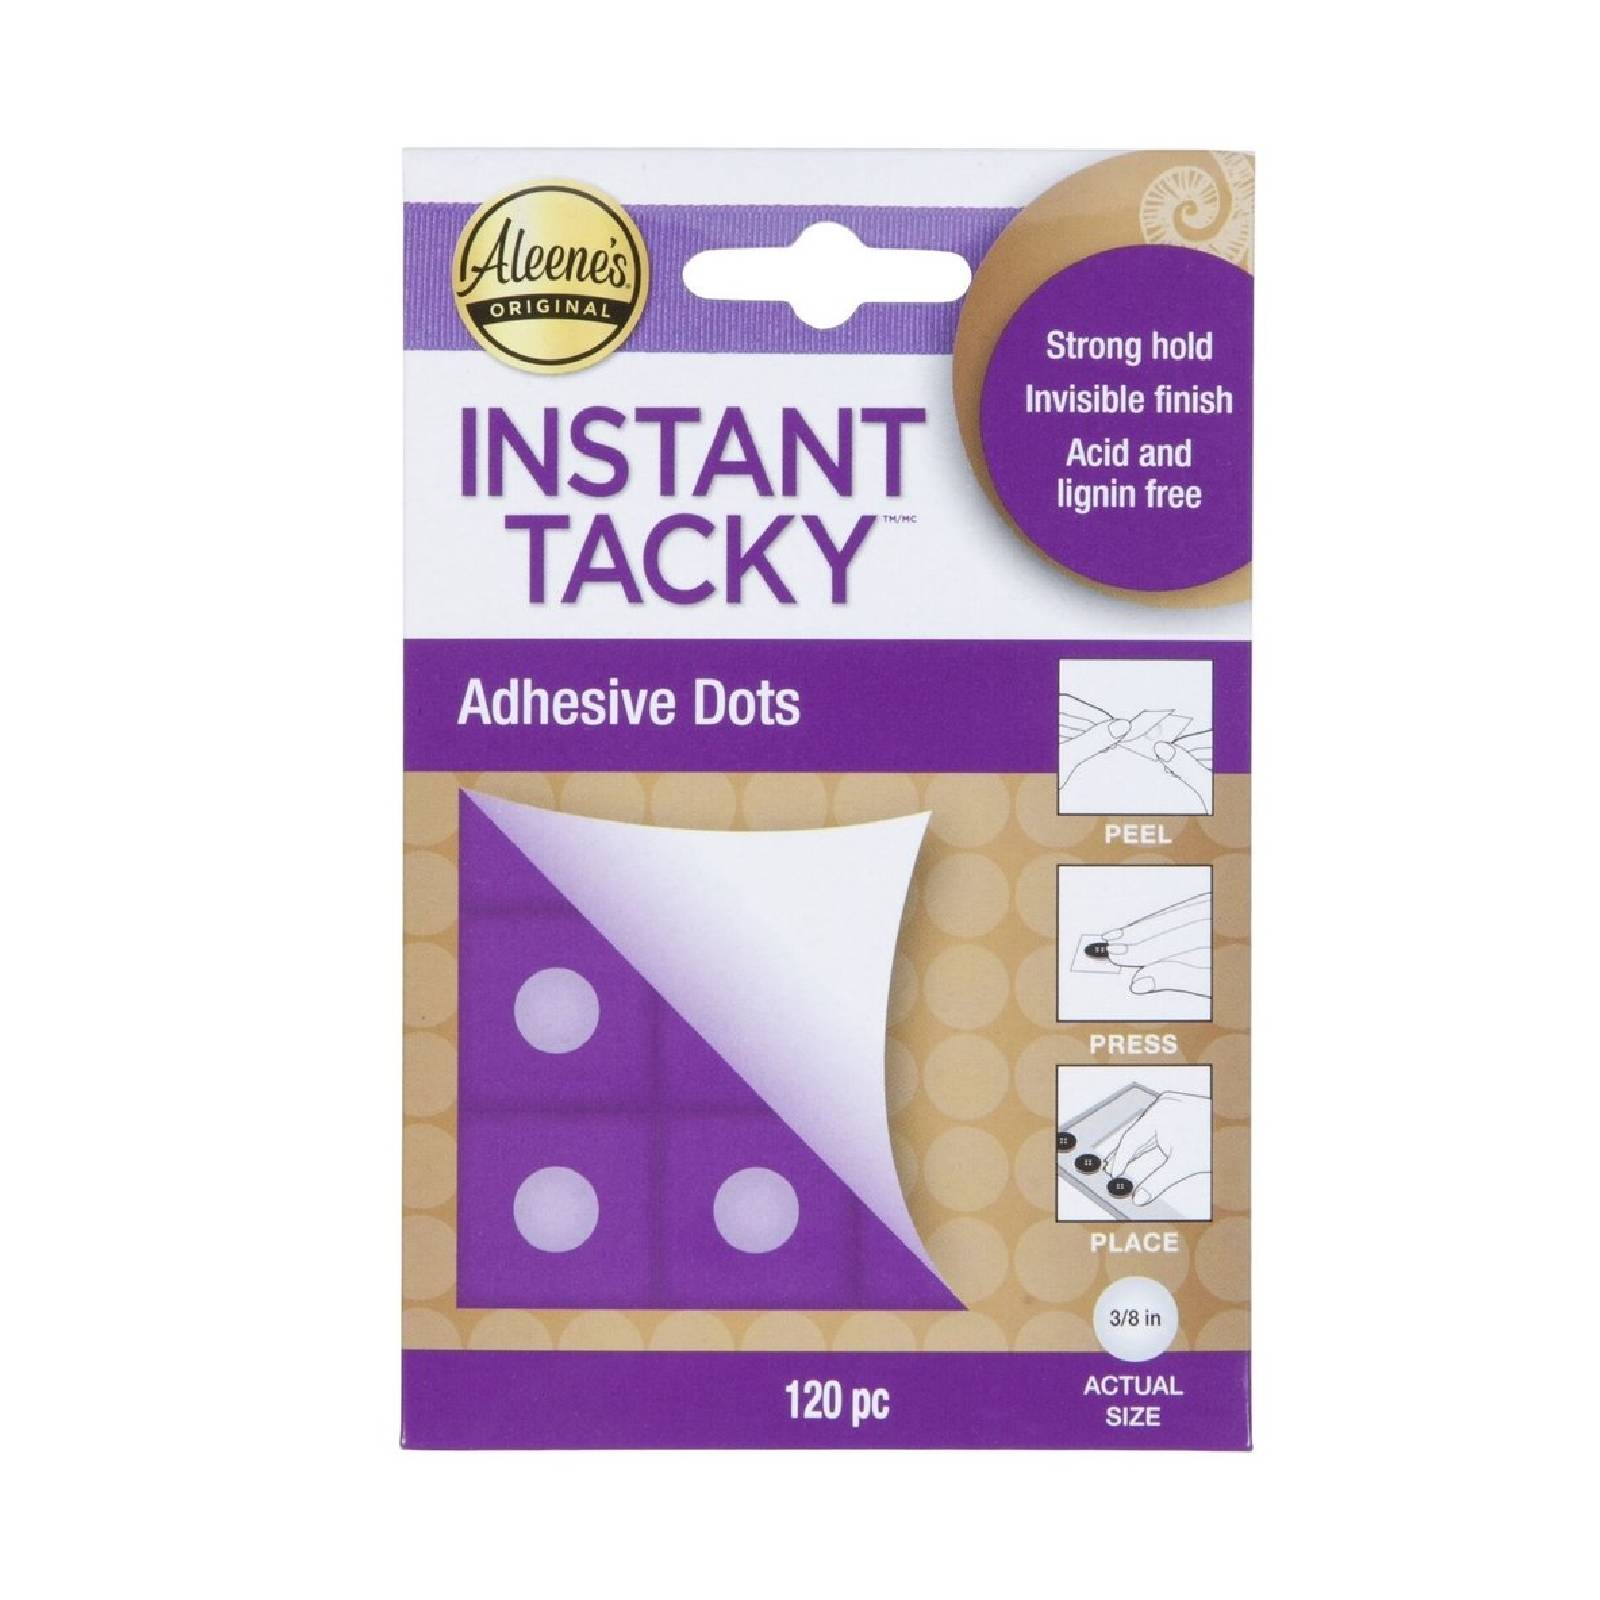 Aleene's • Instant tacky glue dots